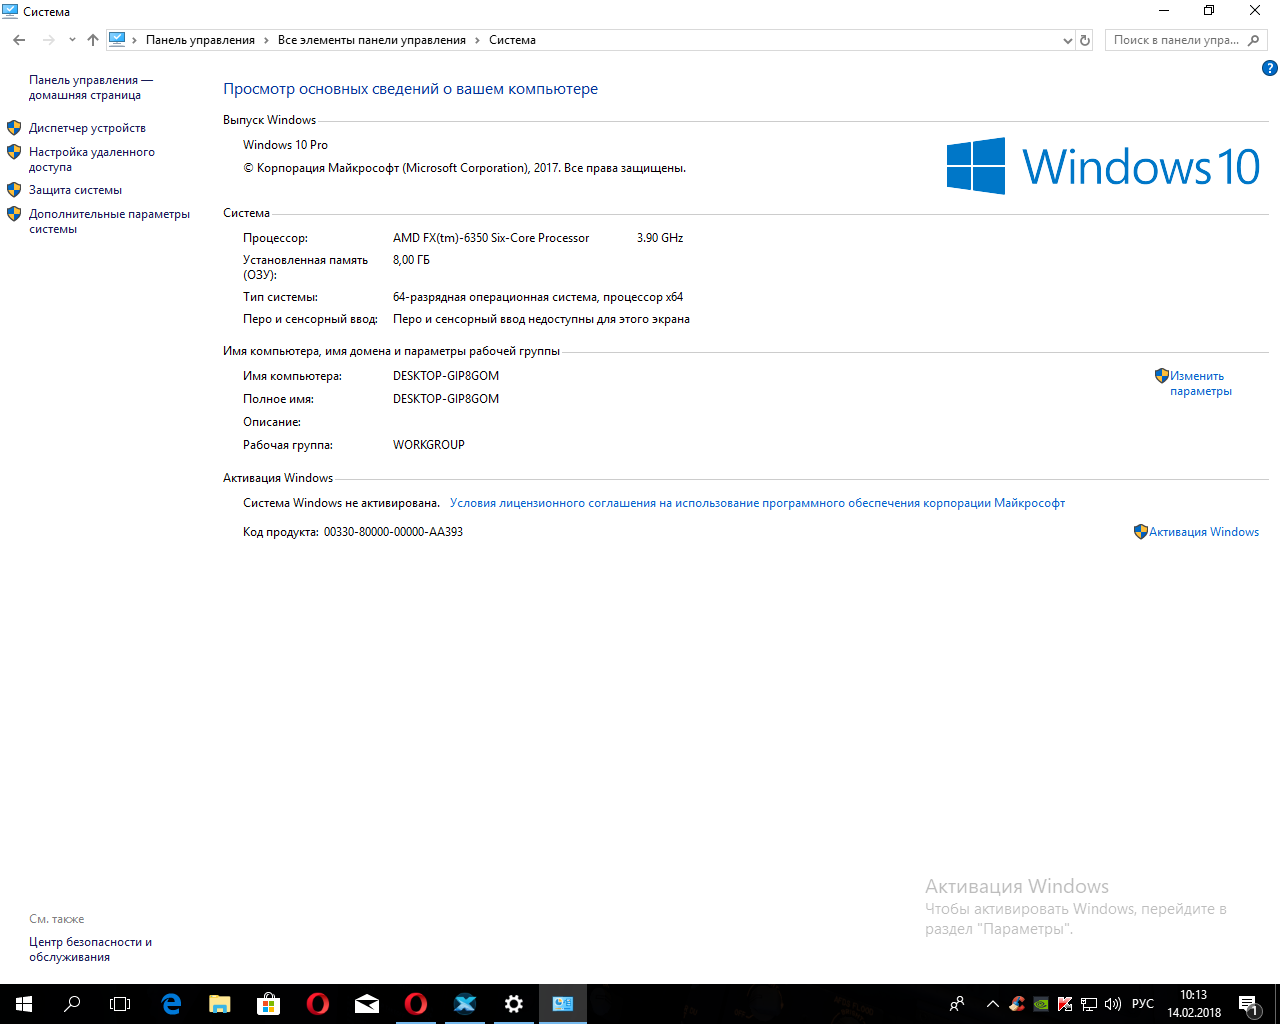 Windows 10 Pro для рабочих станций. 64-Разрядная Операционная система, процессор x64. Виндовс 10 системный блок. Потянет ли процессор 10 винду. Активация windows 11 x64